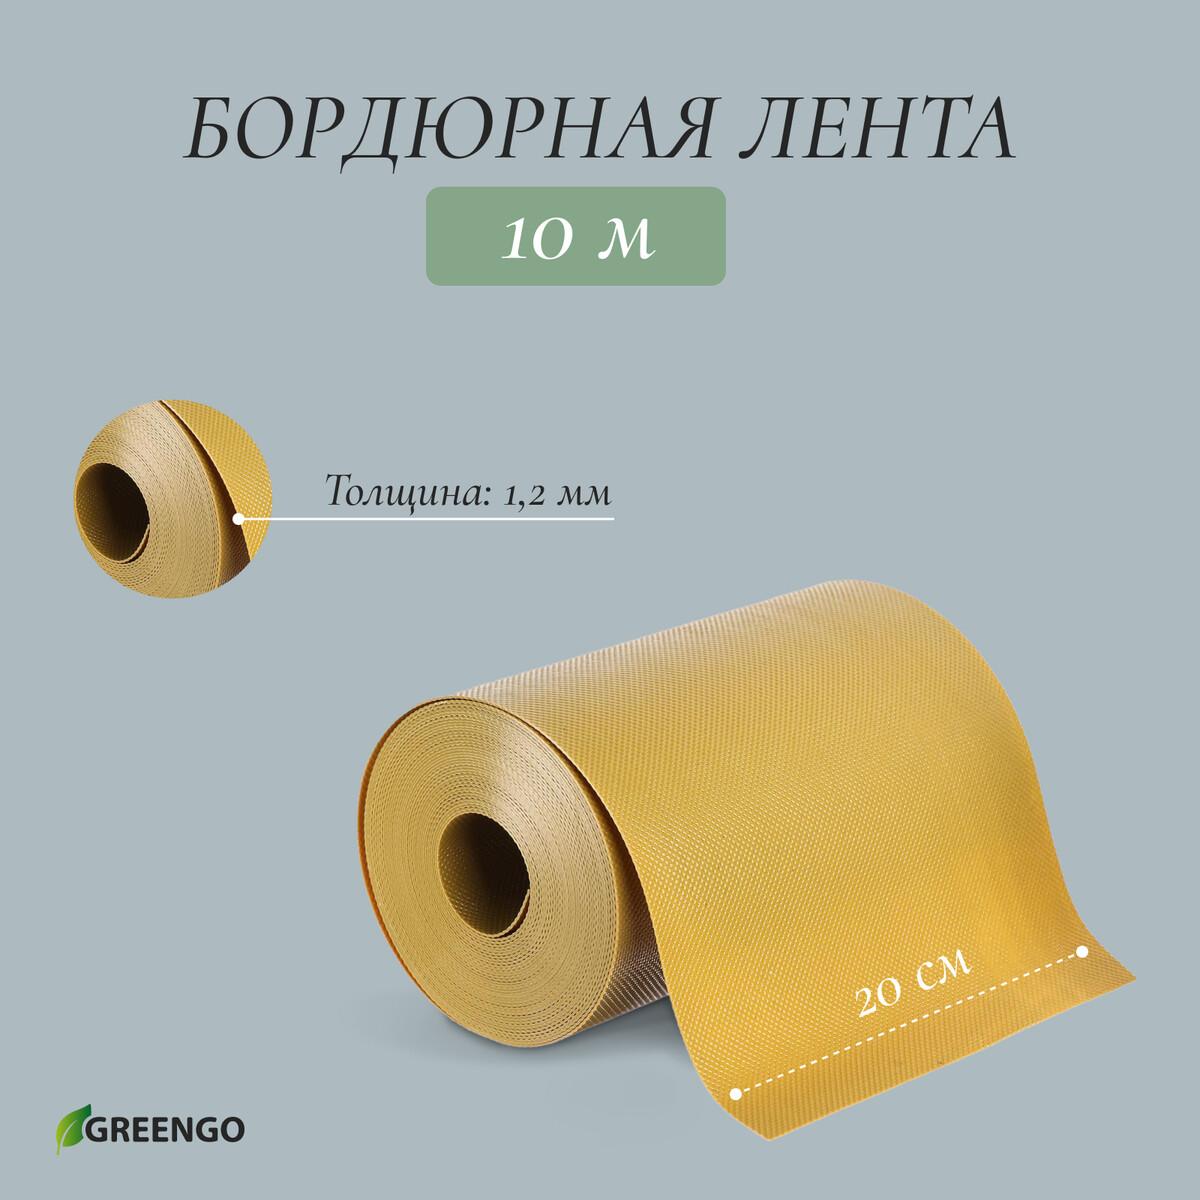 Лента бордюрная, 0.2 × 10 м, толщина 1.2 мм, пластиковая, желтая, greengo